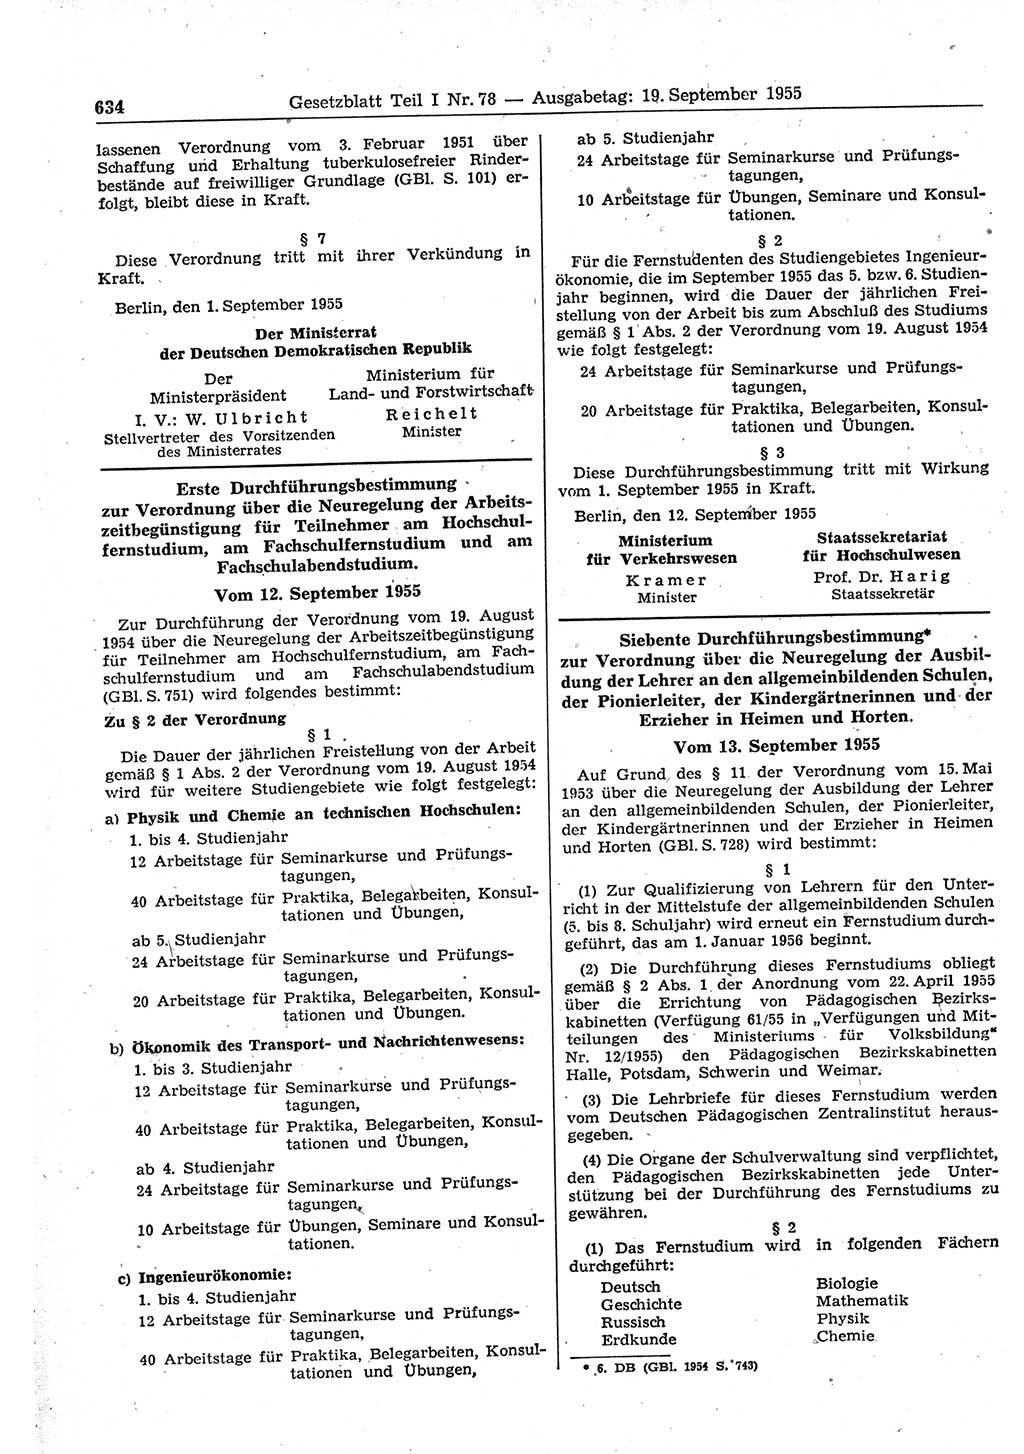 Gesetzblatt (GBl.) der Deutschen Demokratischen Republik (DDR) Teil Ⅰ 1955, Seite 634 (GBl. DDR Ⅰ 1955, S. 634)